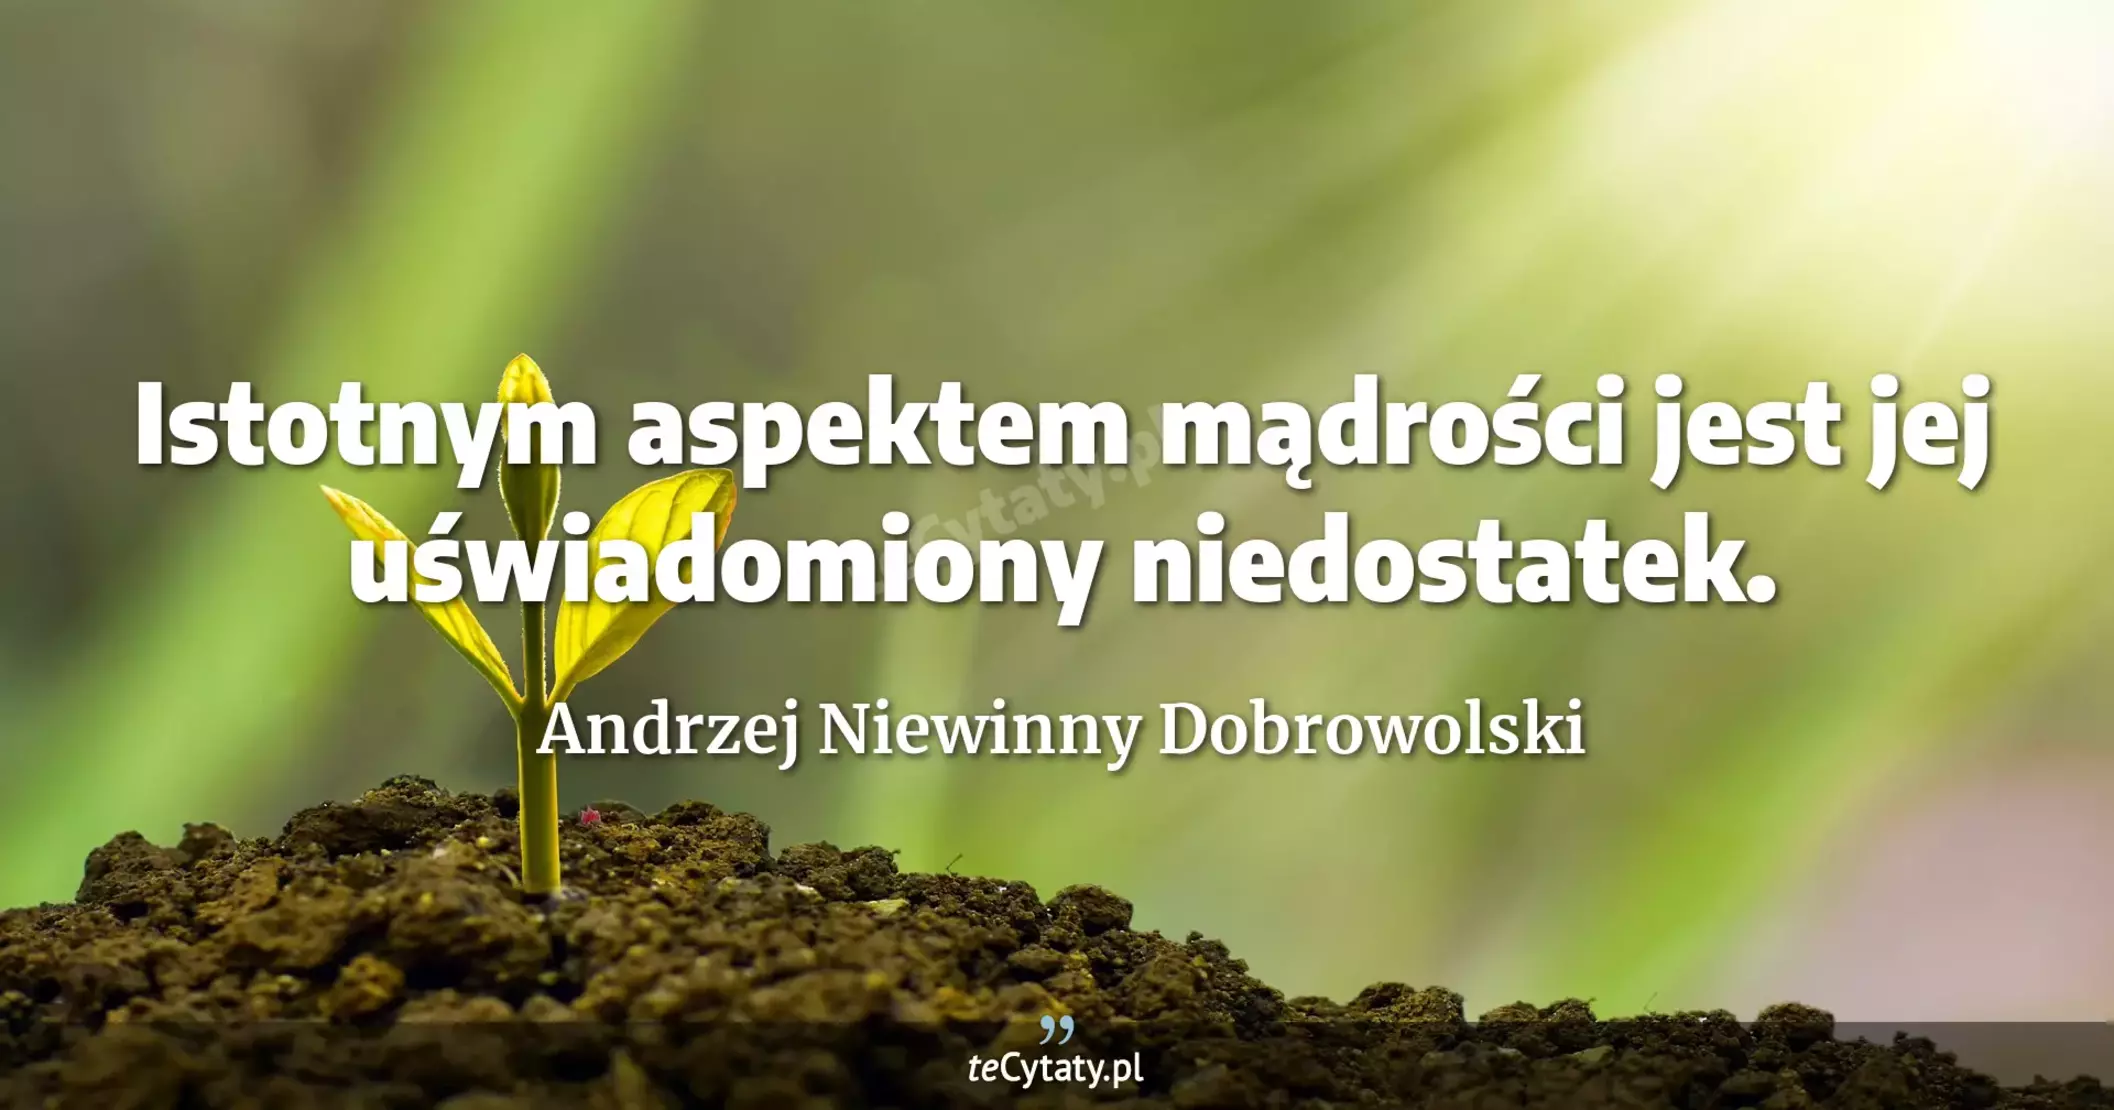 Istotnym aspektem mądrości jest jej uświadomiony niedostatek. - Andrzej Niewinny Dobrowolski